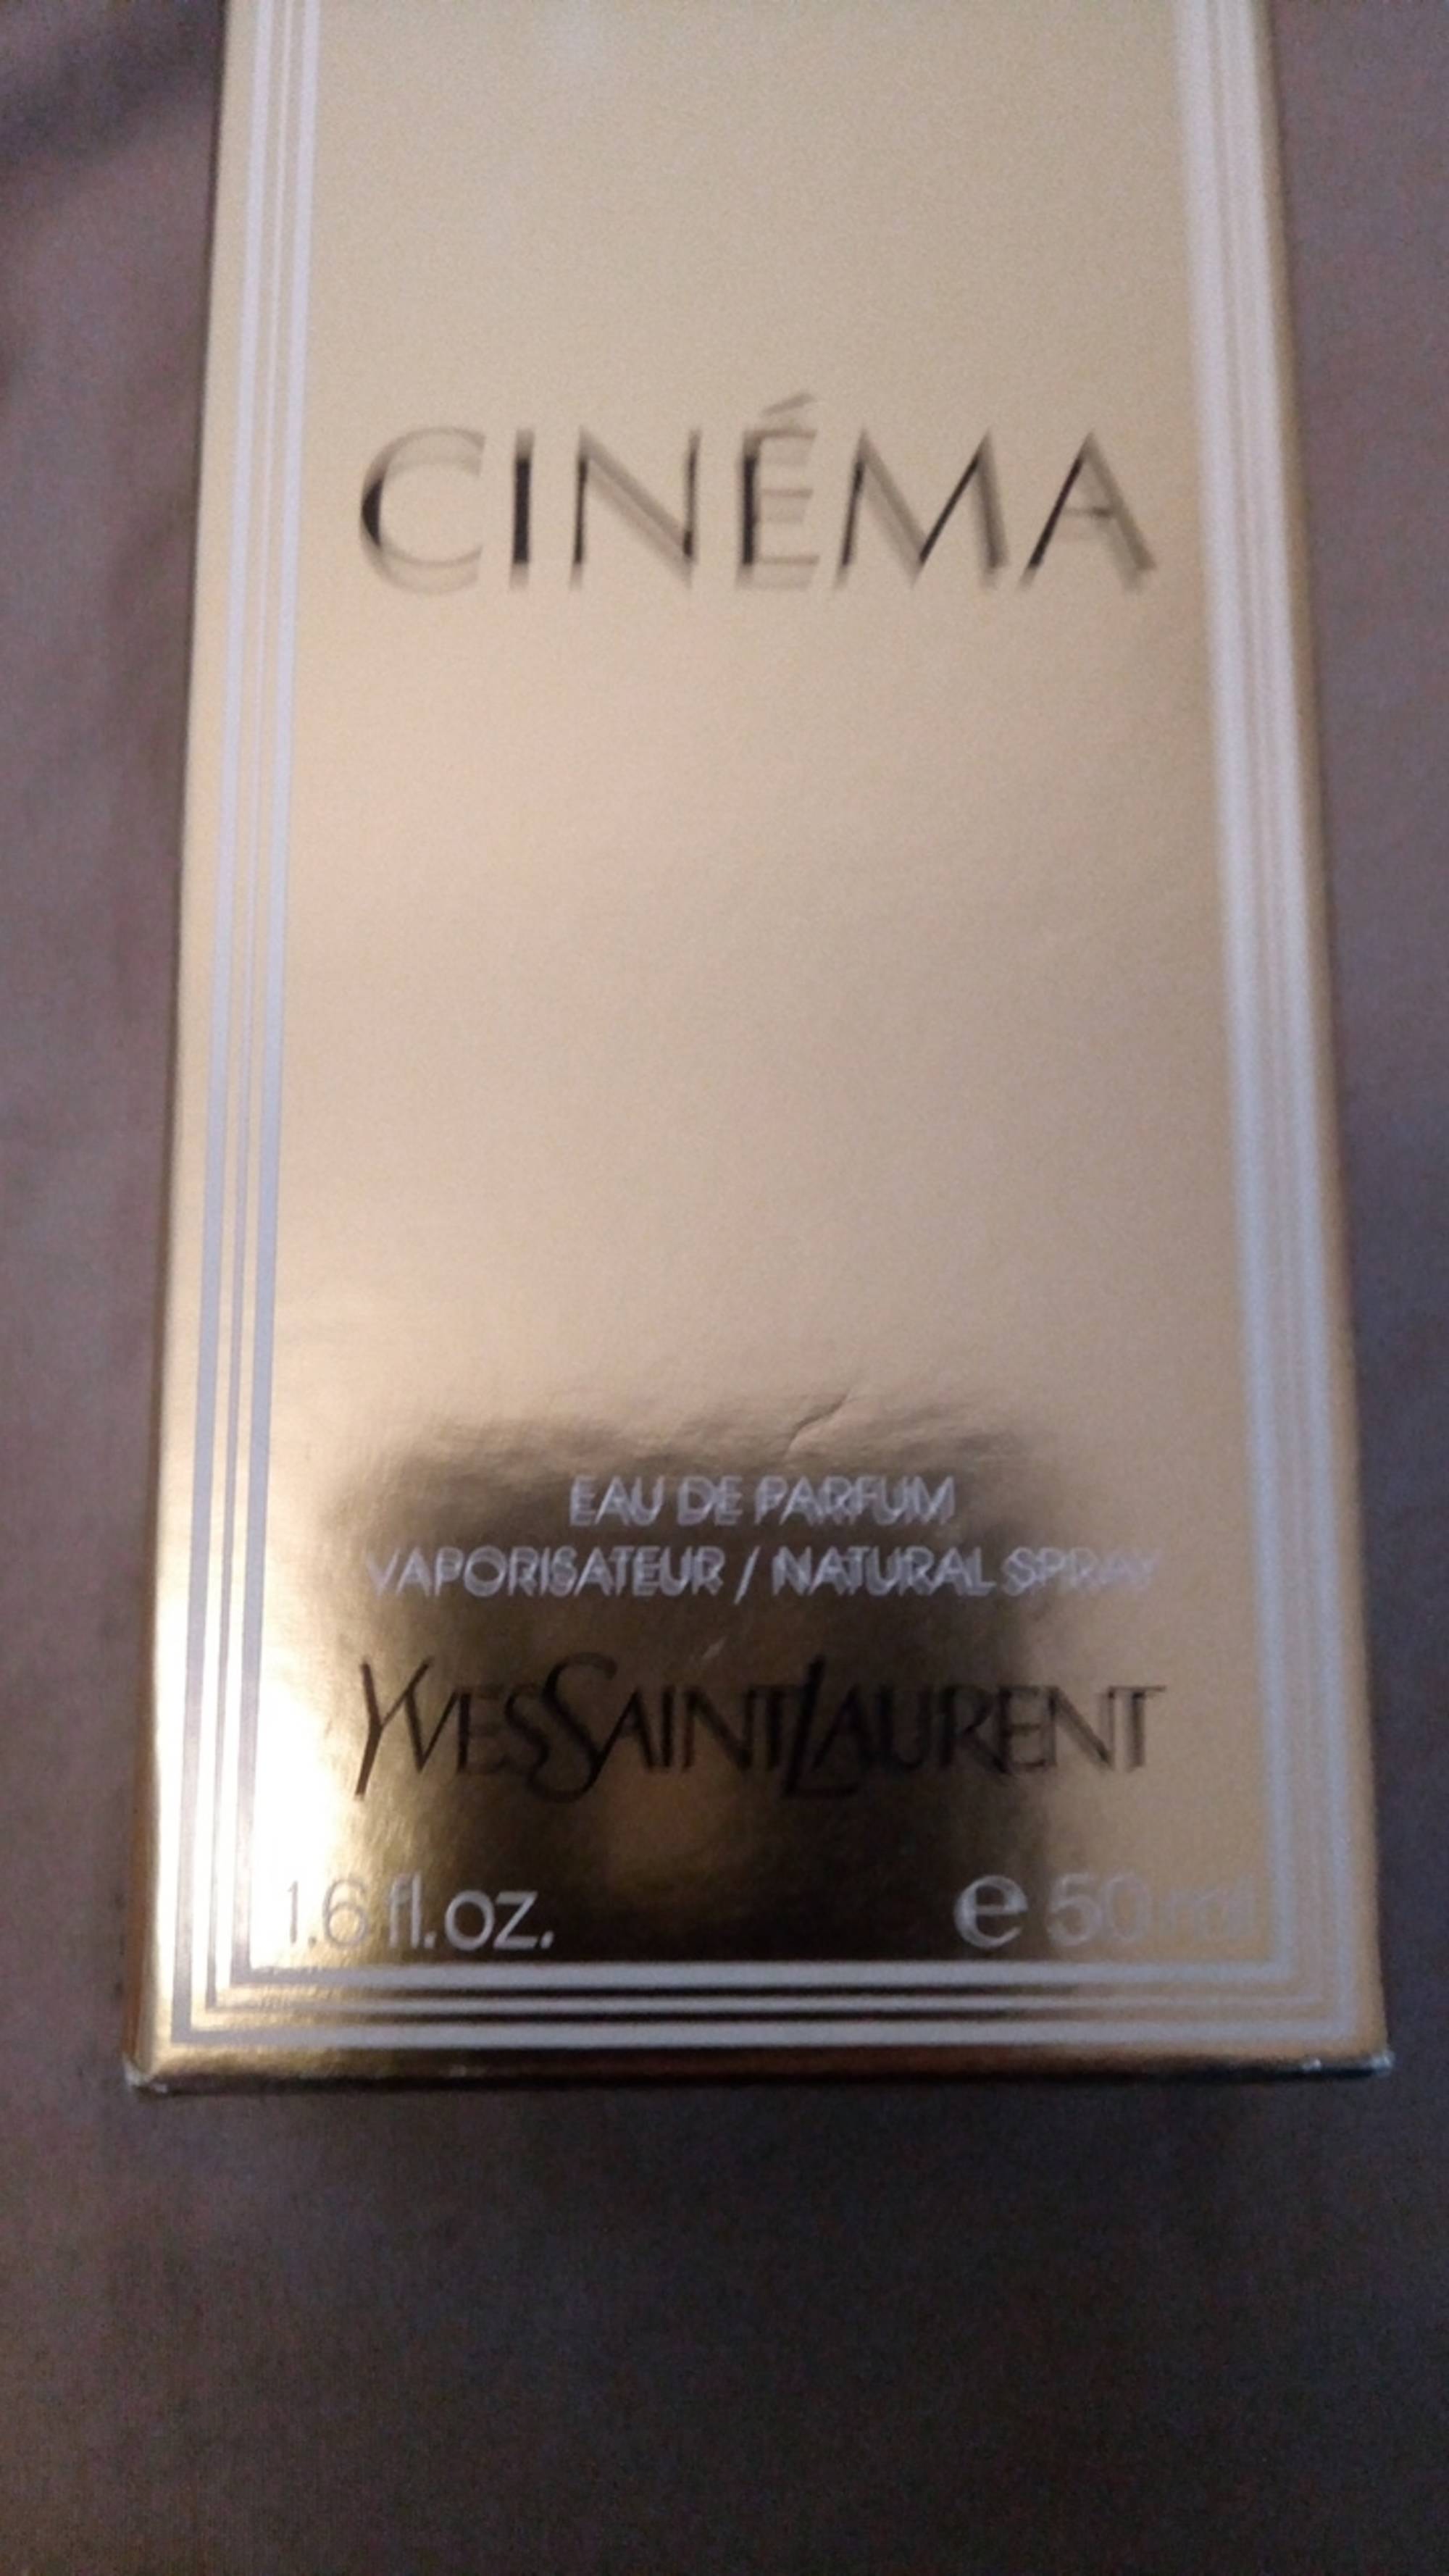 YVES SAINT LAURENT - Cinéma - Eau de parfum